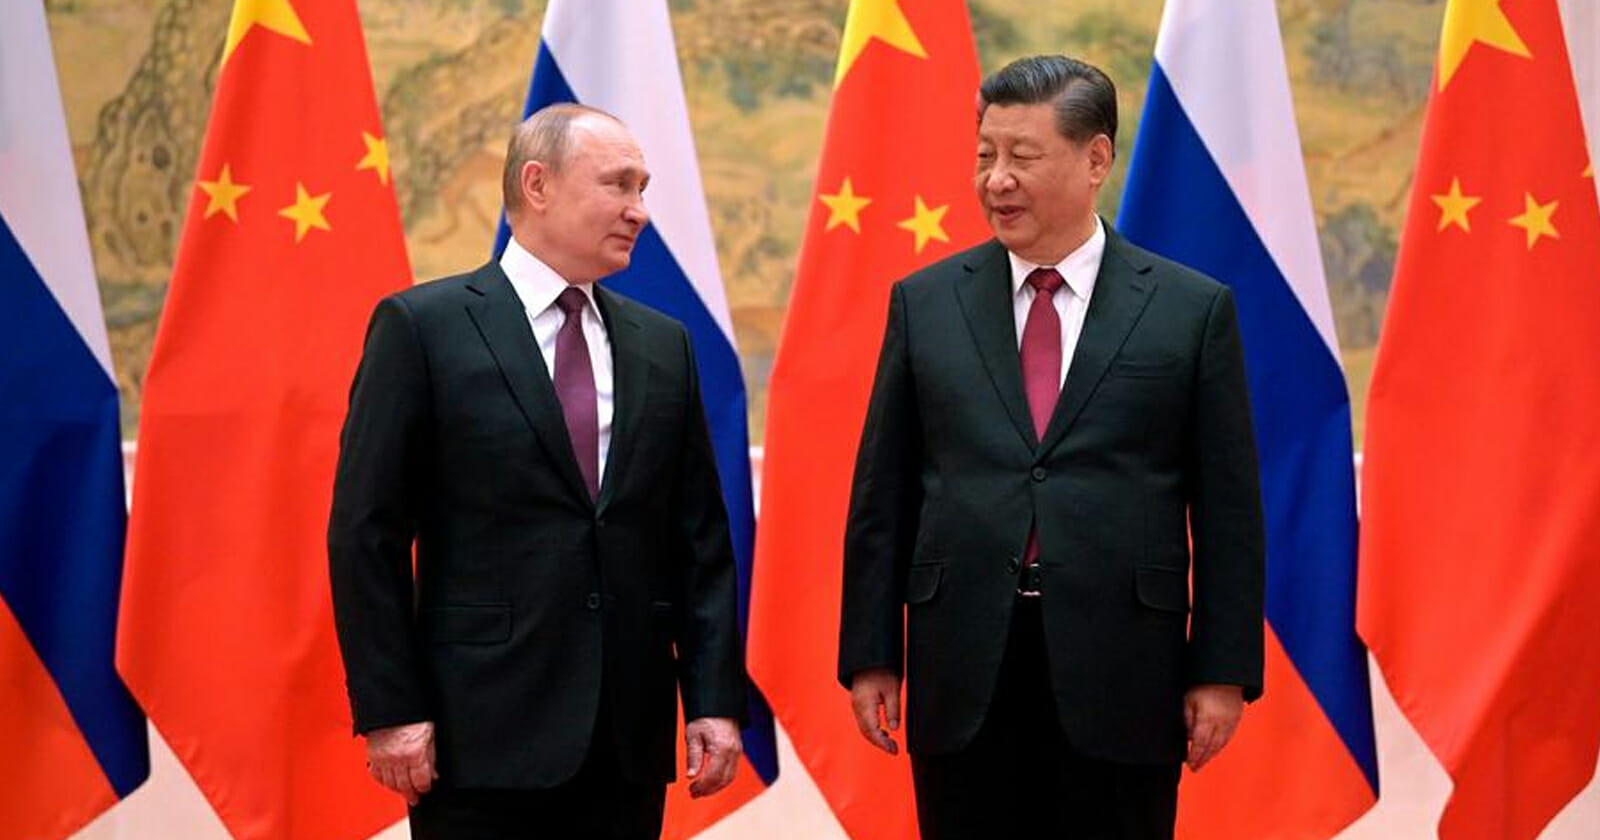 التحالف بين روسيا والصين يقلق أمريكا watanserb.com